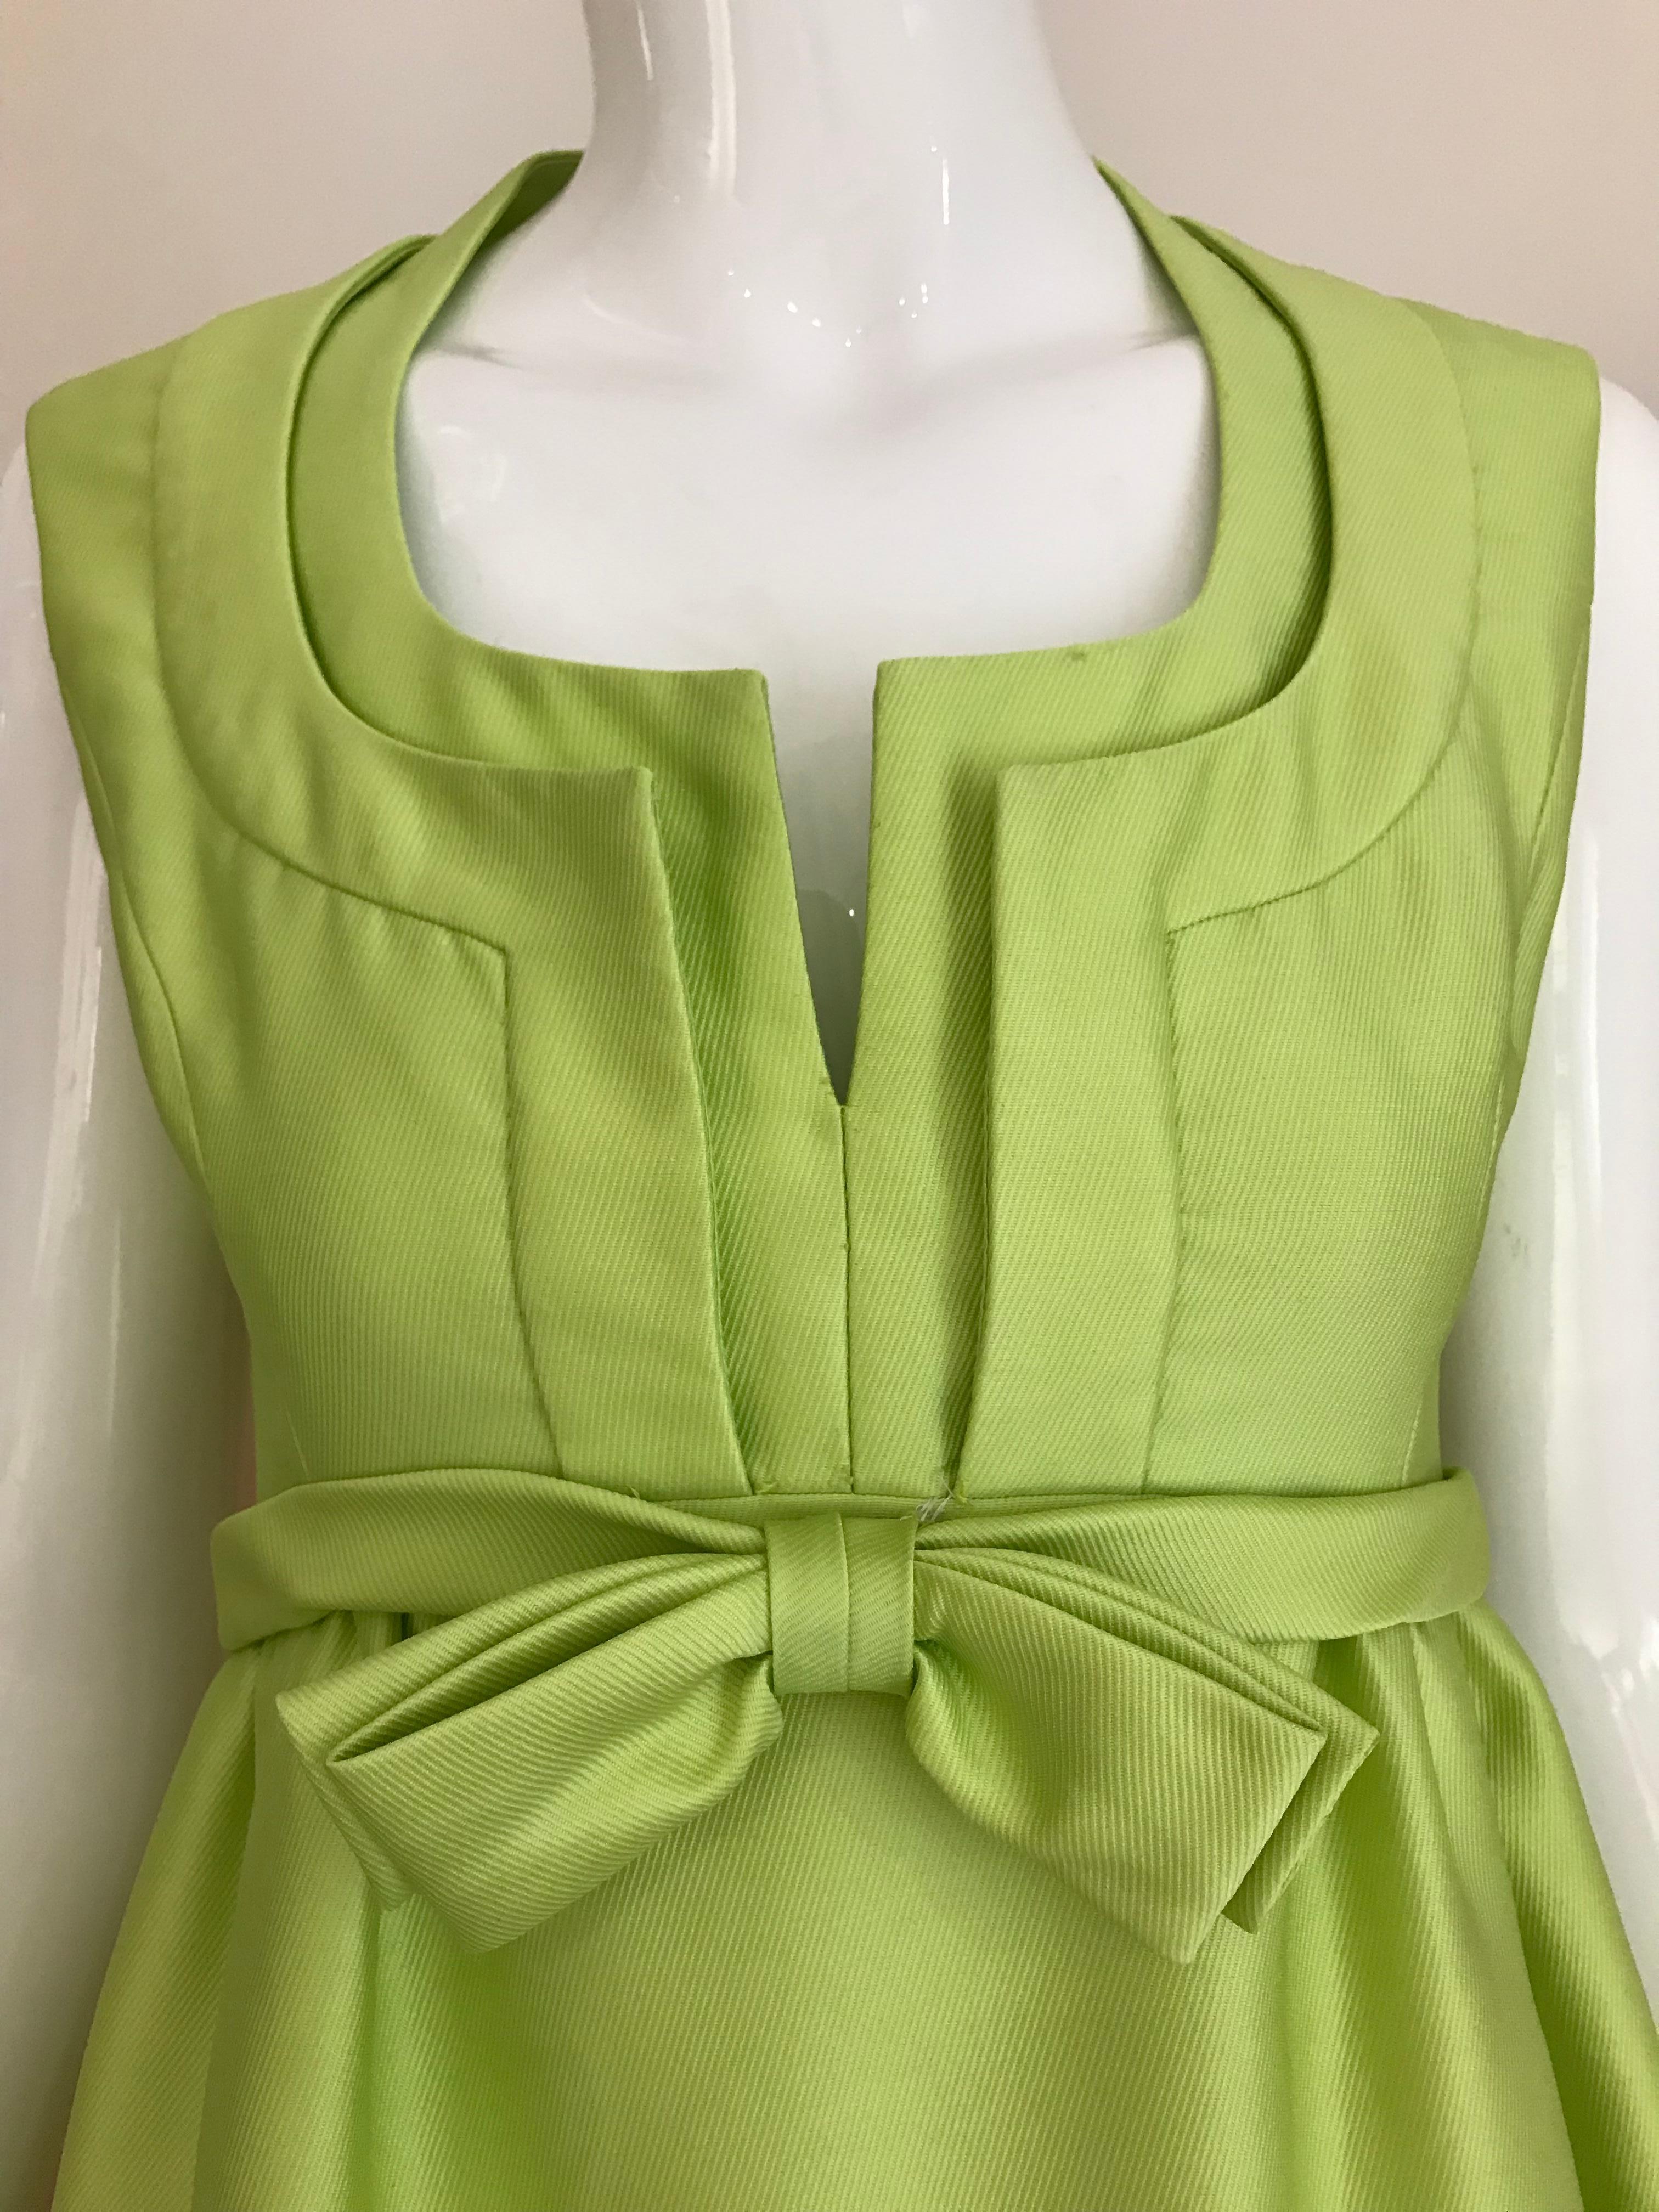 Schönes 1960er Jahre Elinor Simmons für Malcolm Starr Grünes ärmelloses Seidenkleid mit schönem Ausschnitt und Schleife.
Das Kleid ist gefüttert und hat Taschen. 
Größe: 2/4 klein
Brustumfang: 34 Zoll/ Taille: 26 Zoll/ Hüfte: 40 Zoll/ Kleidlänge: 53